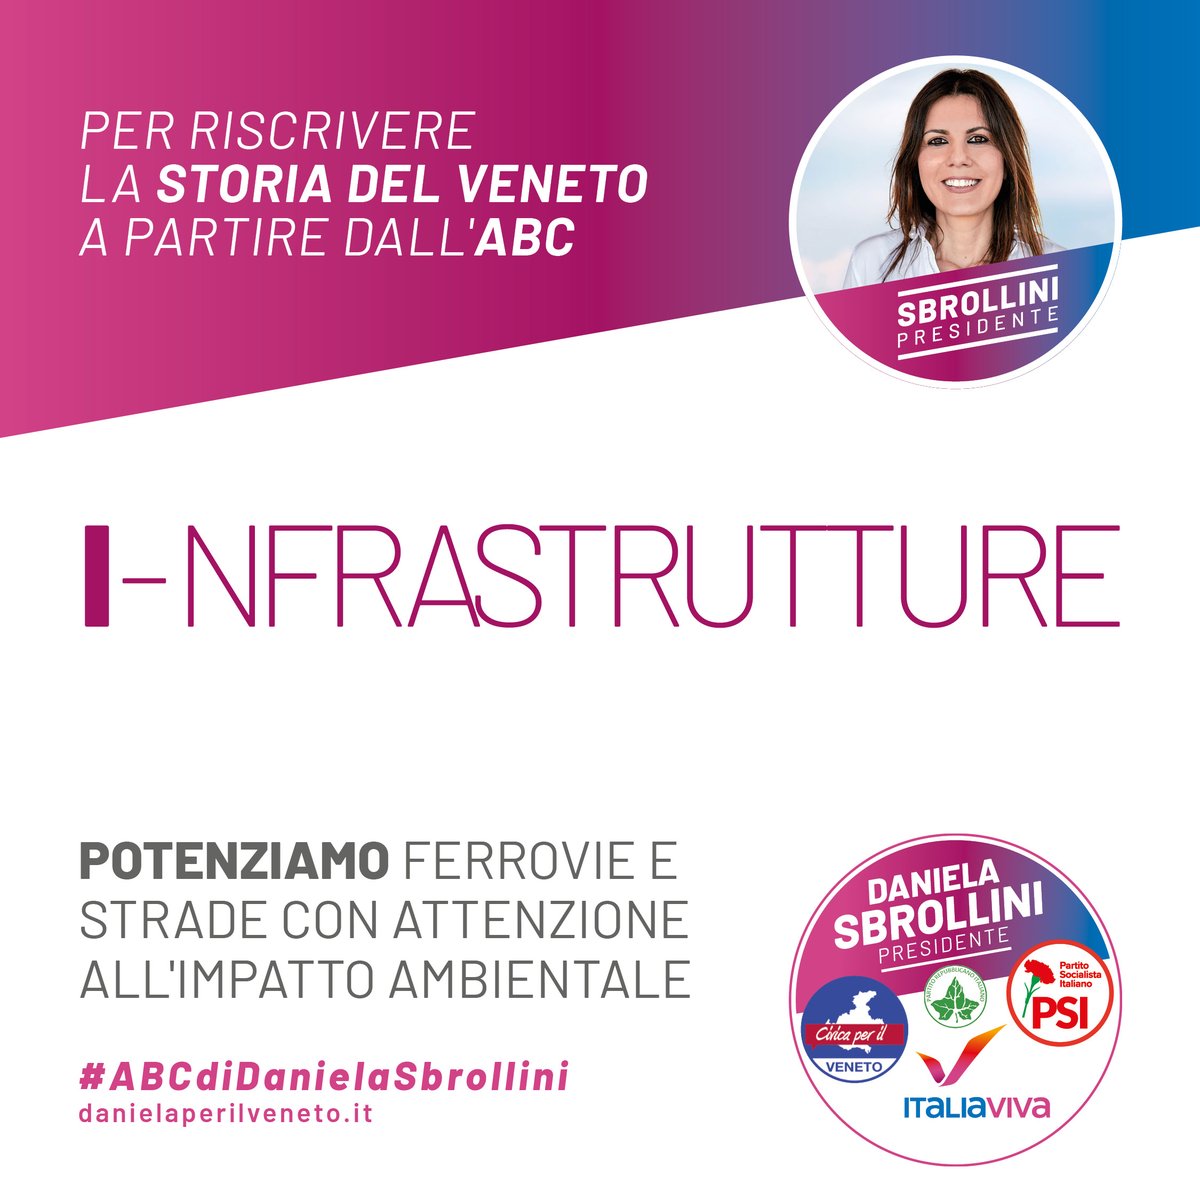 Oggi #ABCdiDanielaSbrollini , il nostro nuovo linguaggio parte della I di #infrastrutture per entrare nel vivo del mio programma che propone azioni concrete su #ferrovie #strade e naturalmente l'#impattoambientale. 

#DanielaSbrolliniPresidente
#ElezioniRegionali2020